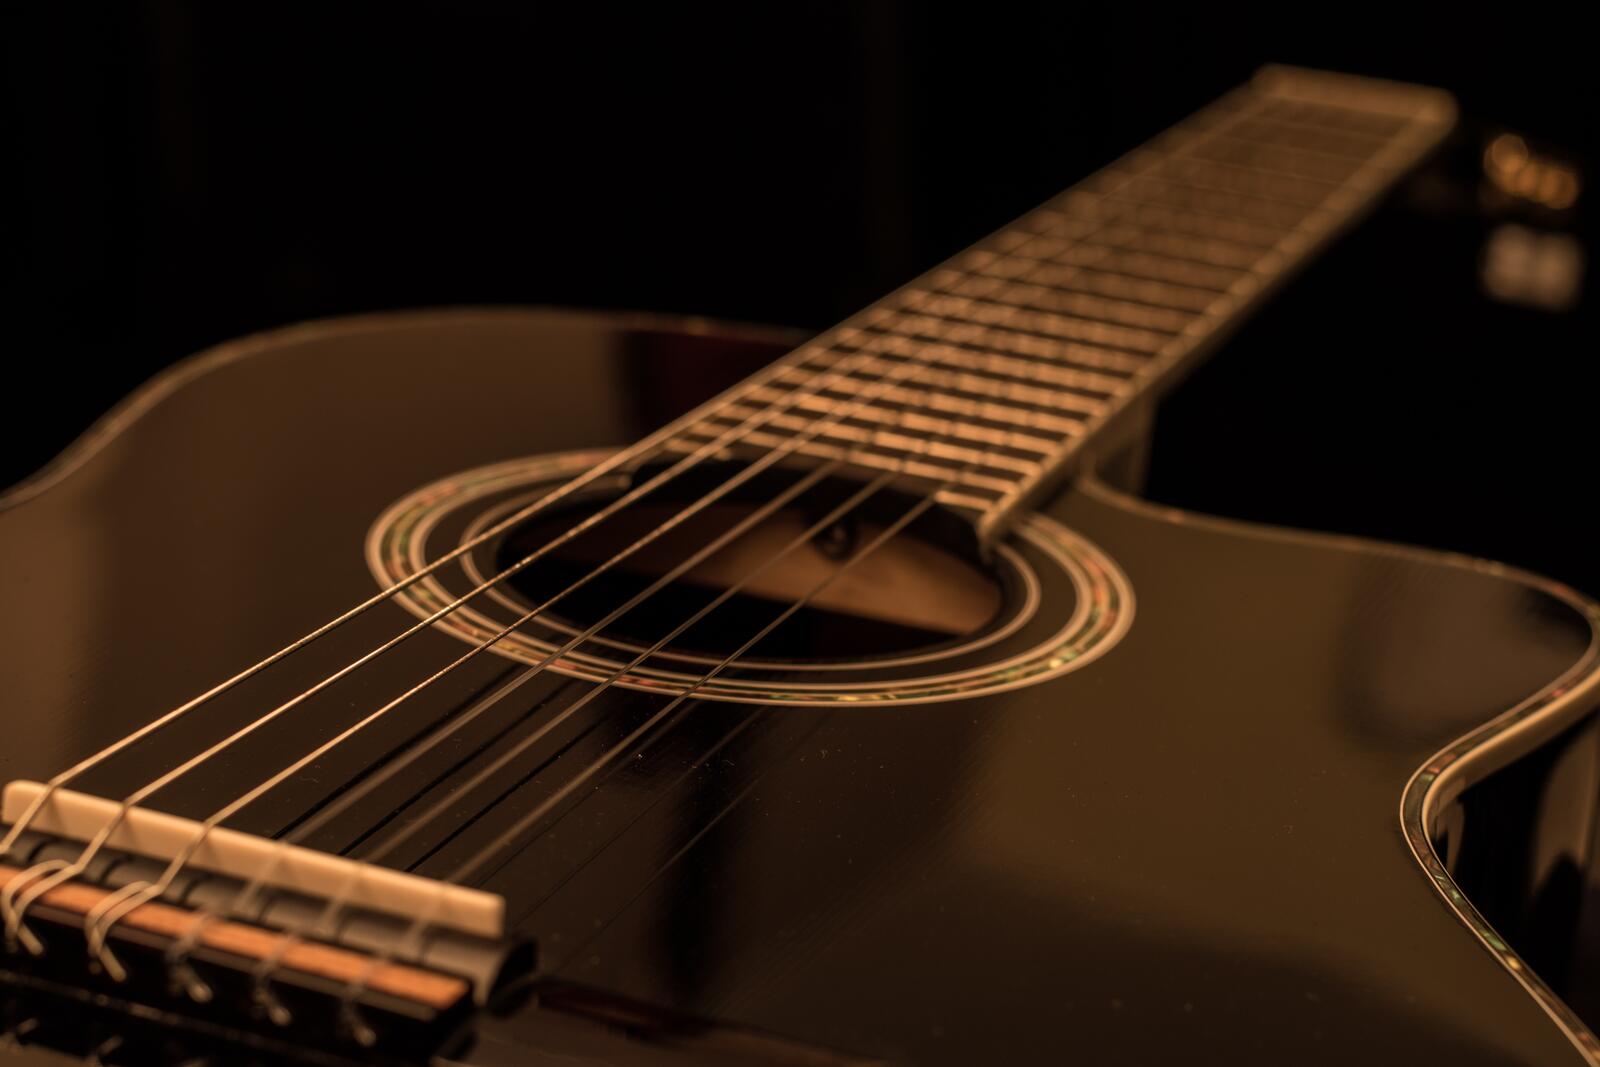 слайд-гитара музыкальный инструмент черный